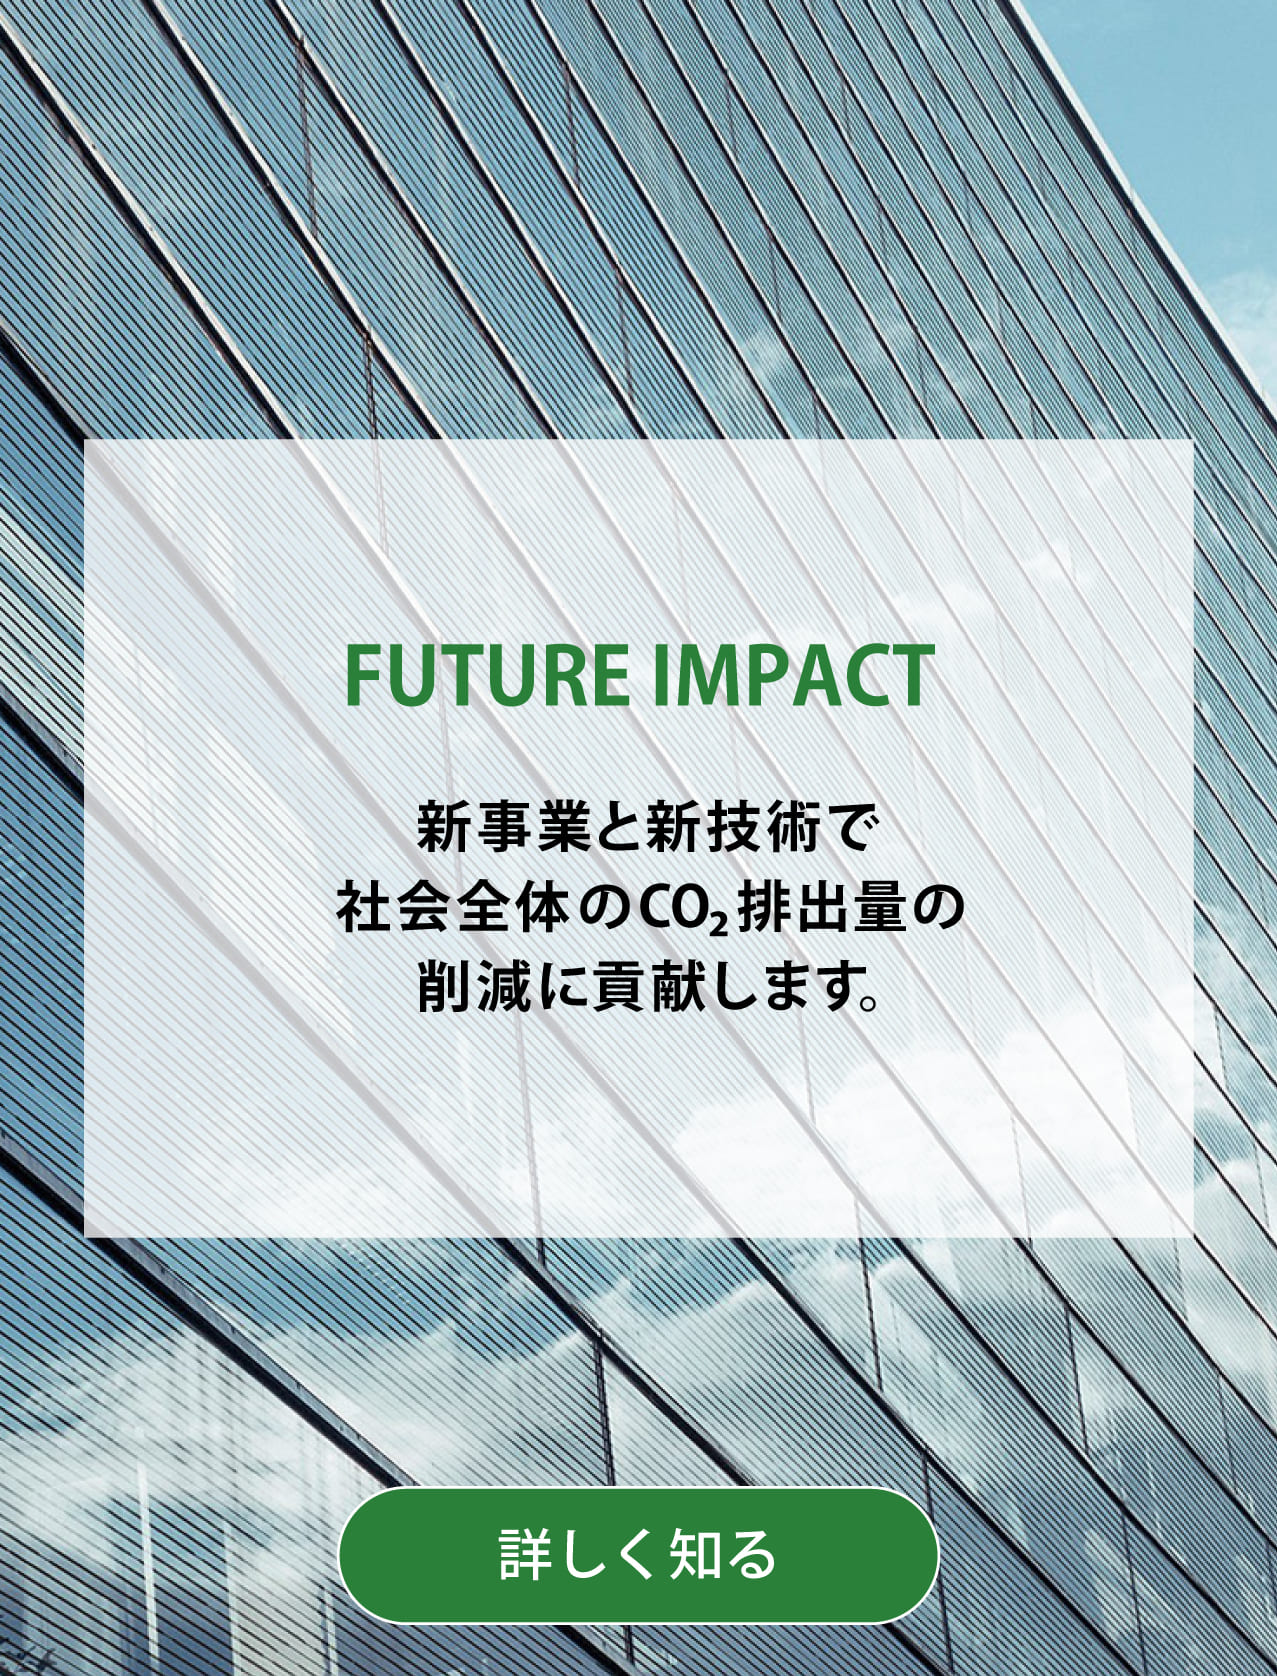 FUTURE IMPACT 新事業と新技術で社会全体のCO2排出量の削減に貢献します。背景写真：ペロブスカイト太陽電池を高層ビルの窓に利用したCGイメージ。詳しく知る